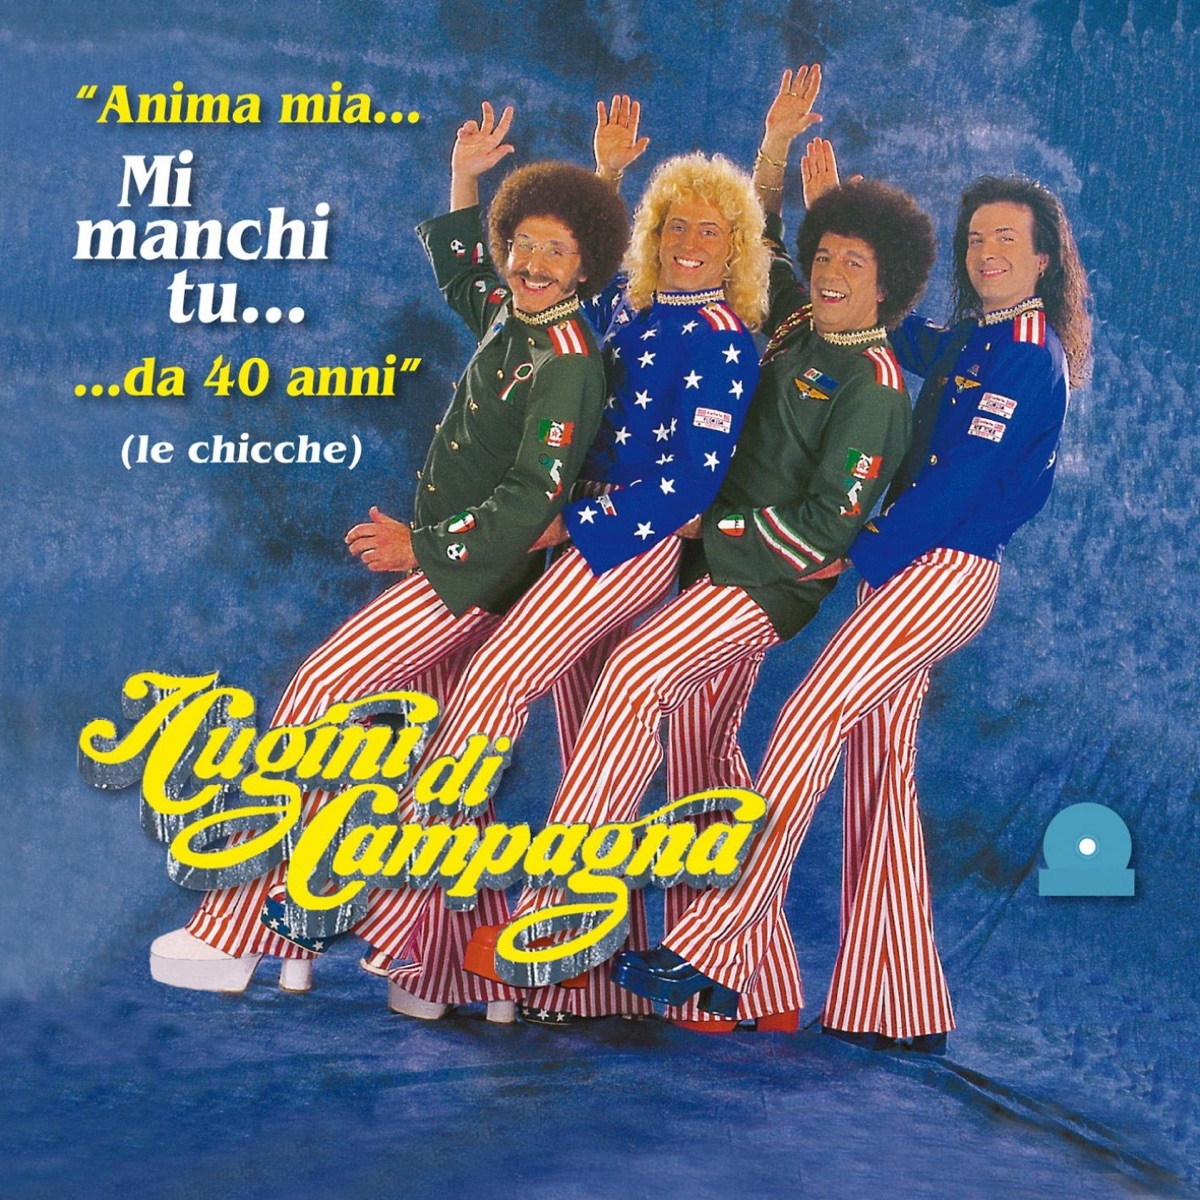 Anima mia... Mi manchi tu ...da 40 anni (Le chicche) by Cugini di Campagna  on Apple Music